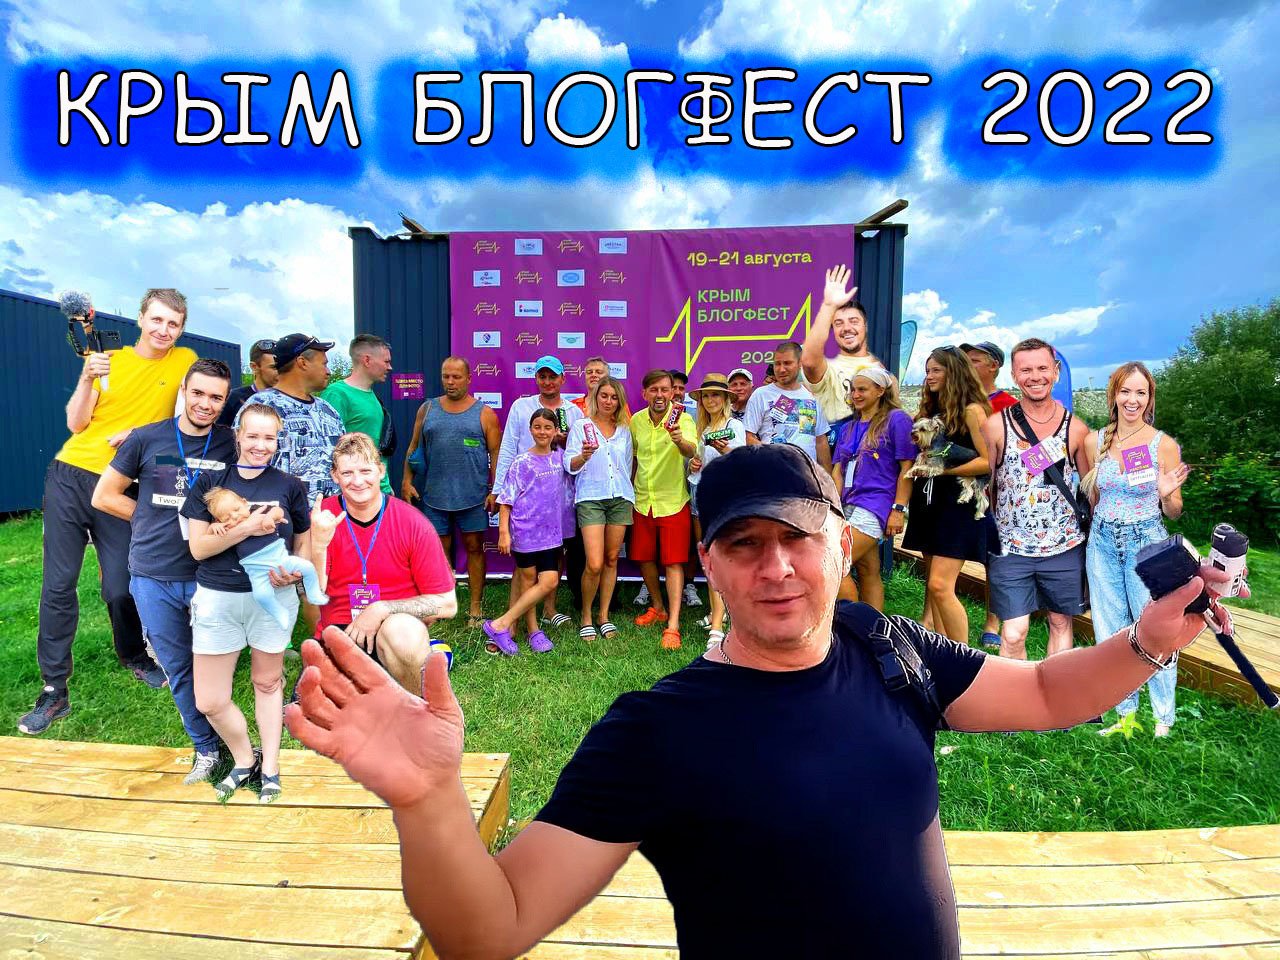 ВСЕ блогеры Крыма приехали в это место ЗАЧЕМ?  Марсианское Озеро и Крымблогфест 2022 село Скалистое